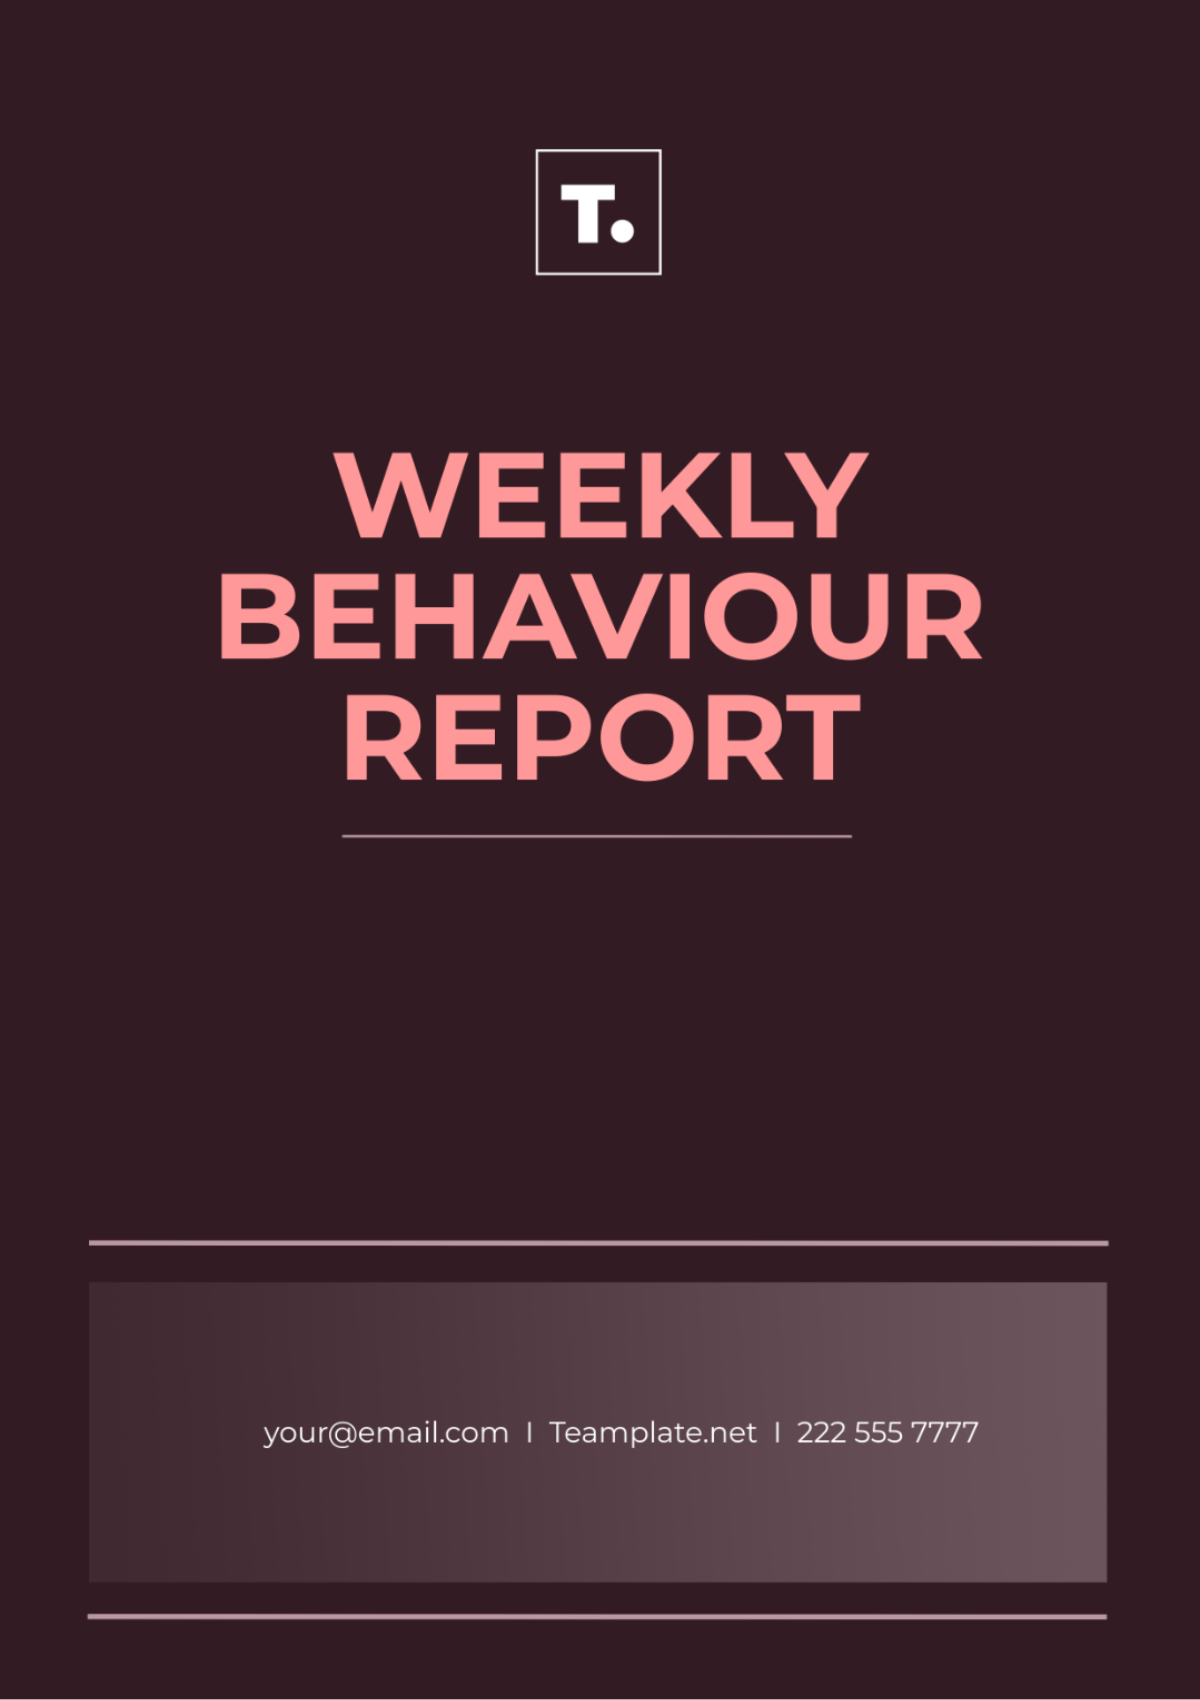 Weekly Behavior Report Template